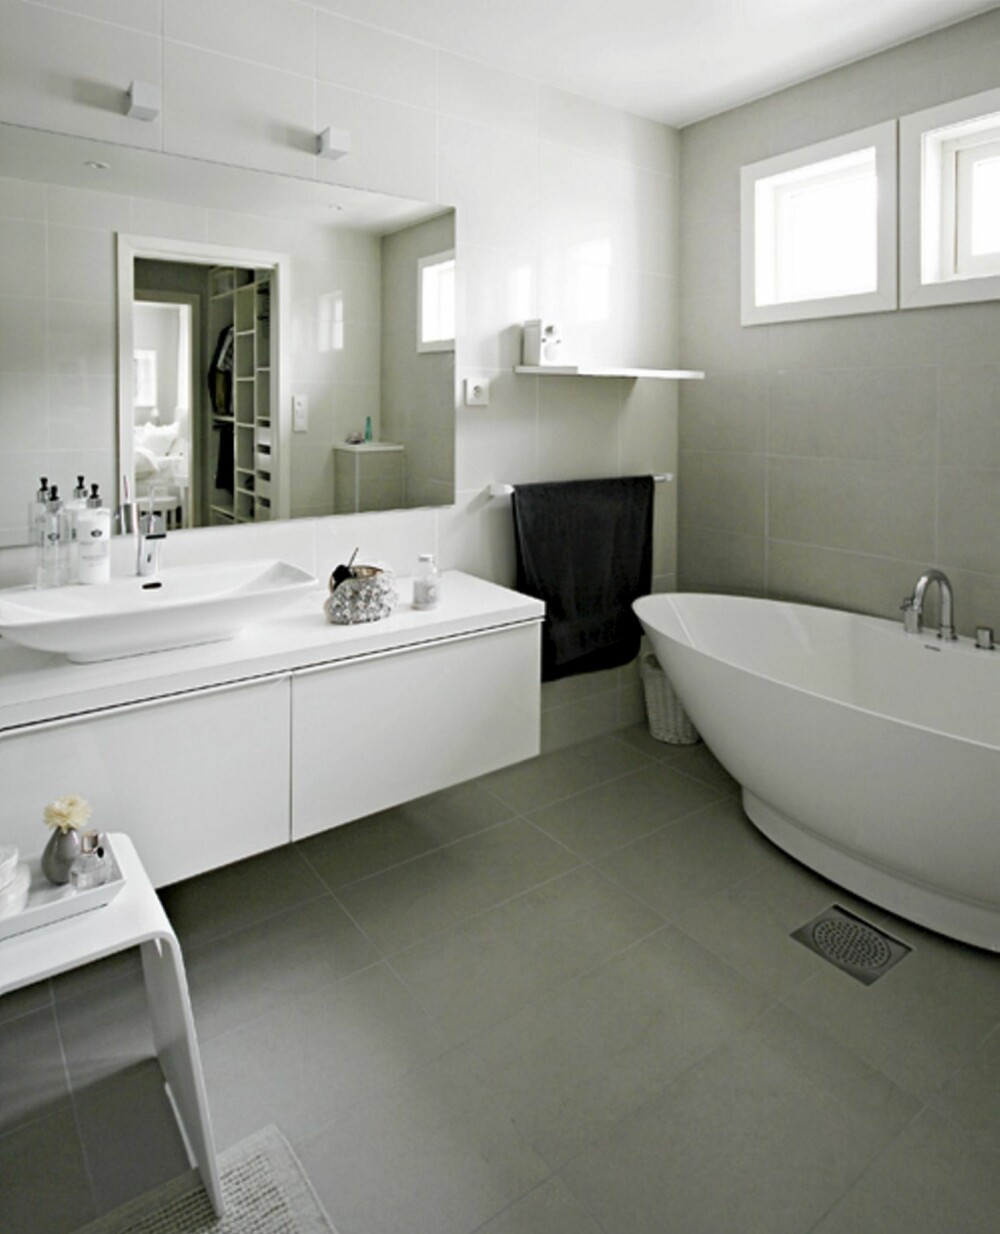 BLANDET DROPS: Vaskeservanten og skapet er fra Ikea, mens badekaret er fra Svedbergs